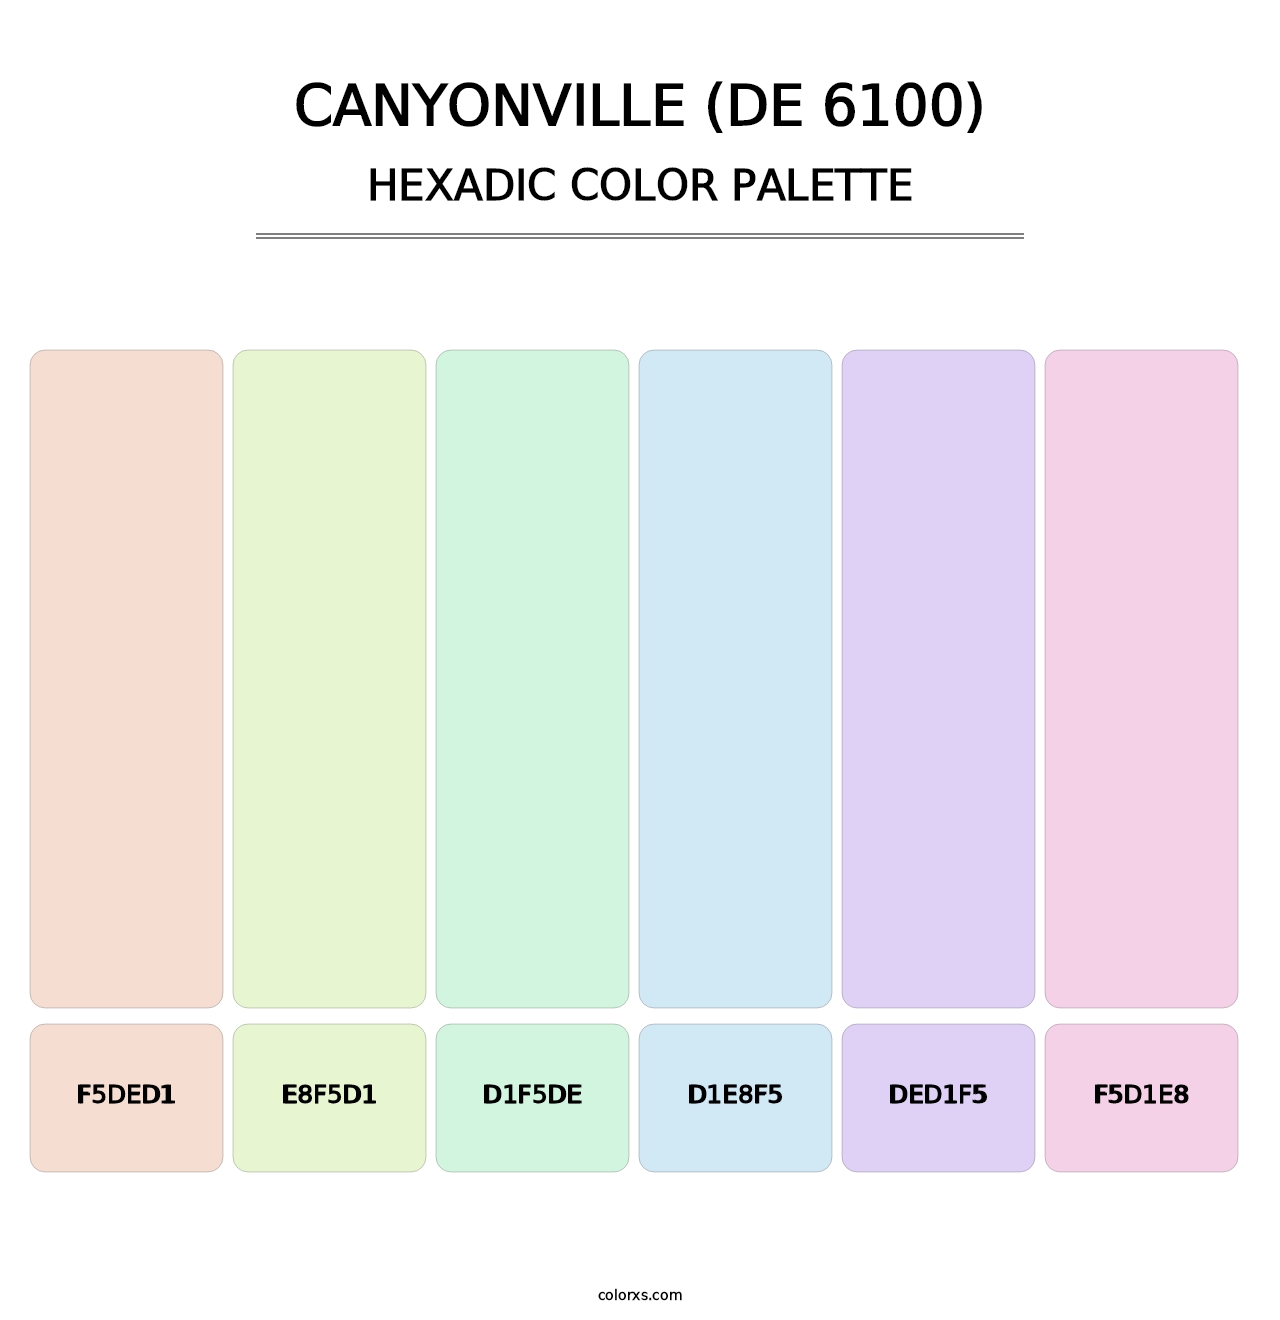 Canyonville (DE 6100) - Hexadic Color Palette